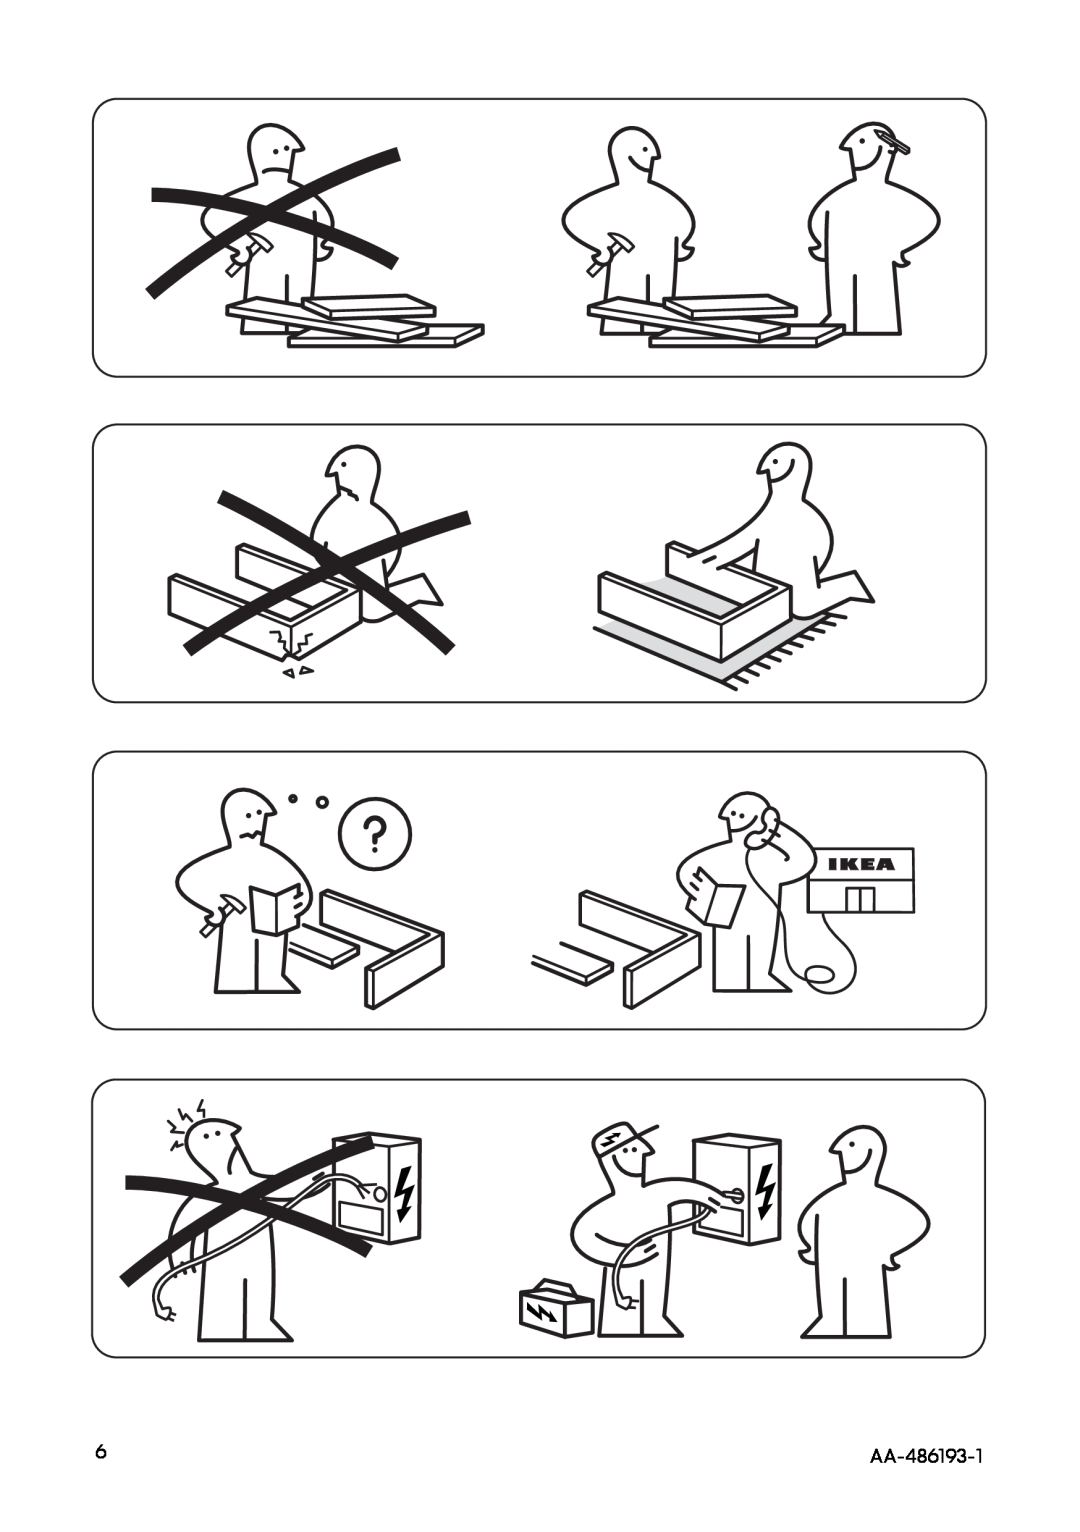 IKEA MW6 manual AA-486193-1 